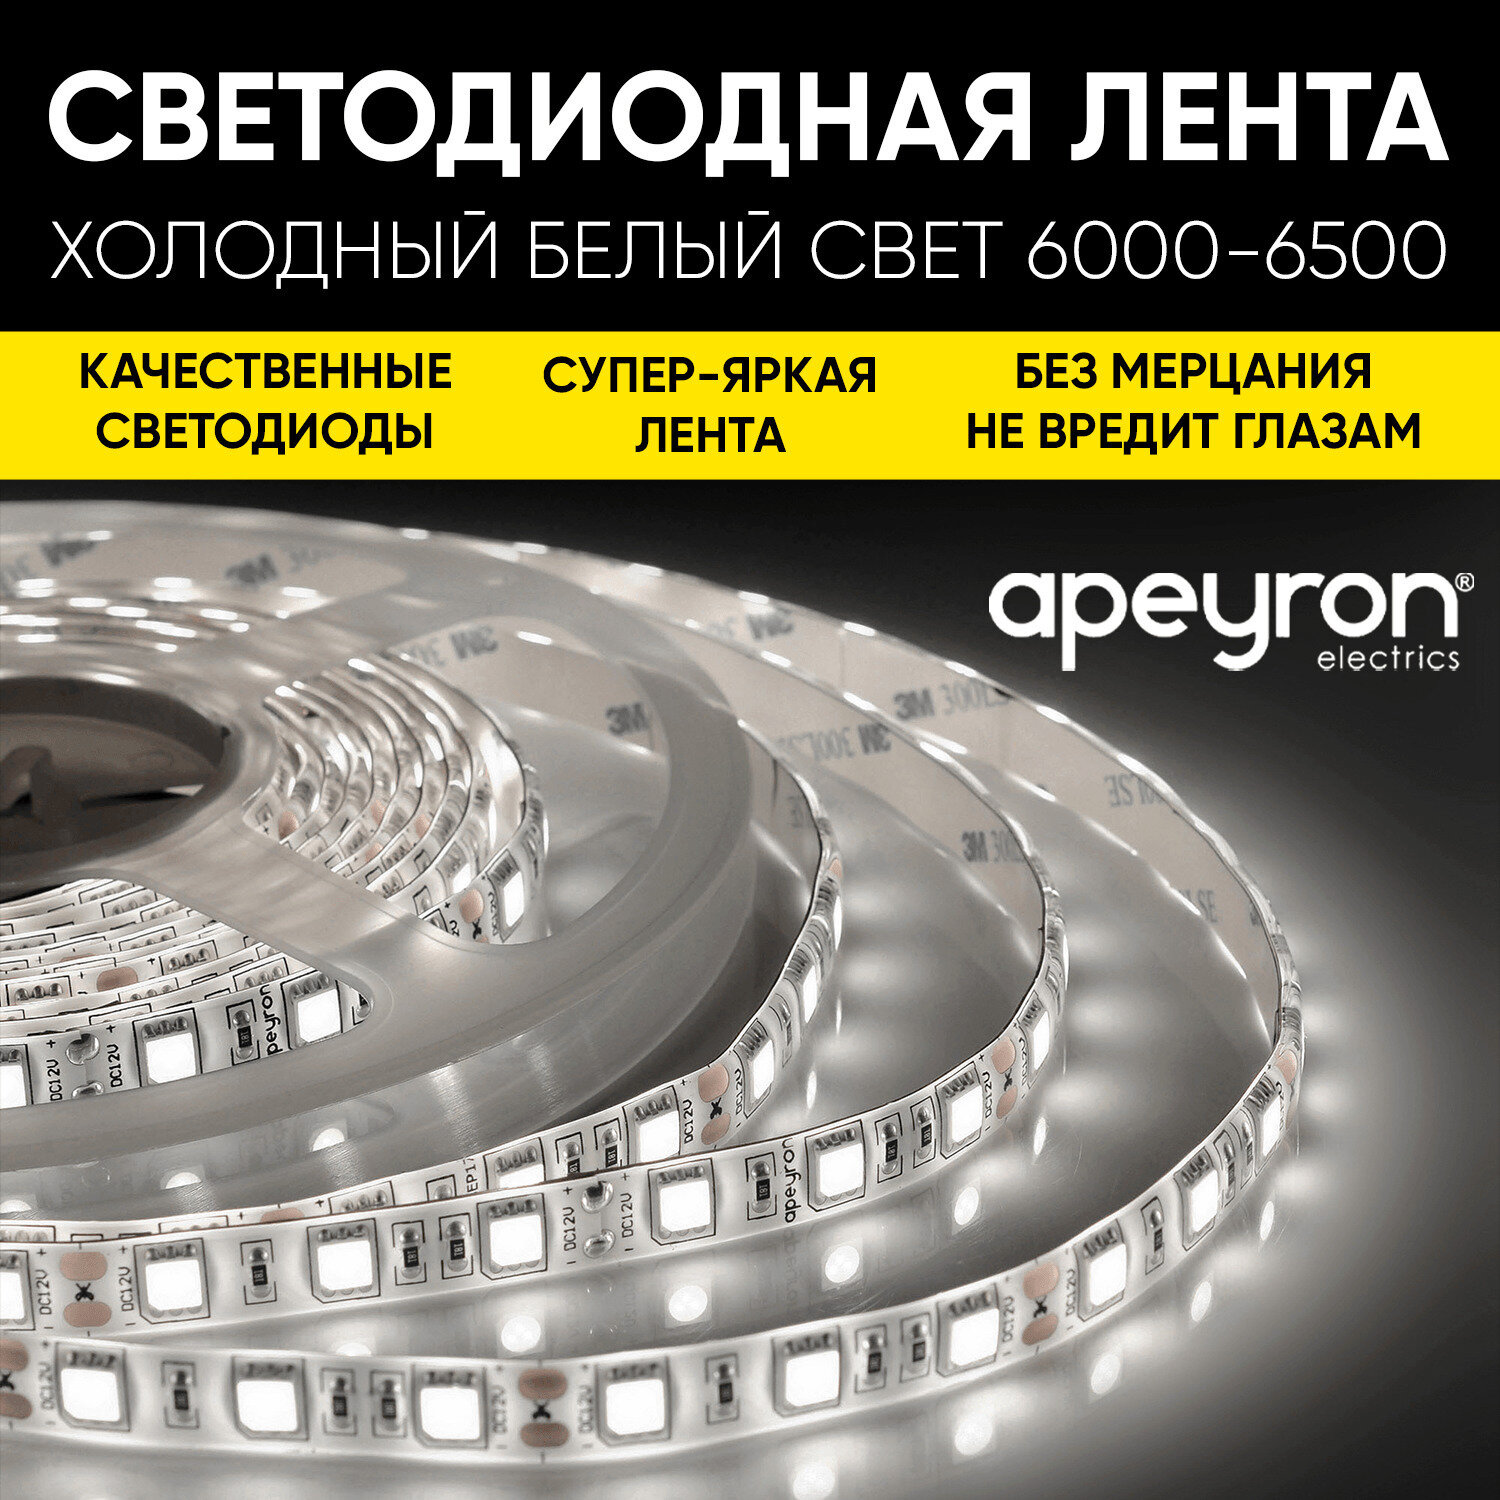 Яркая светодиодная лента в блистере Apeyron 10-130 с напряжением 12В, обладает холодным белым цветом свечения 6500K, излучает световой поток равный 280 Лм/м 60д/м / 4,8Вт/м / smd3528 / IP20 / длина 2, - фотография № 1